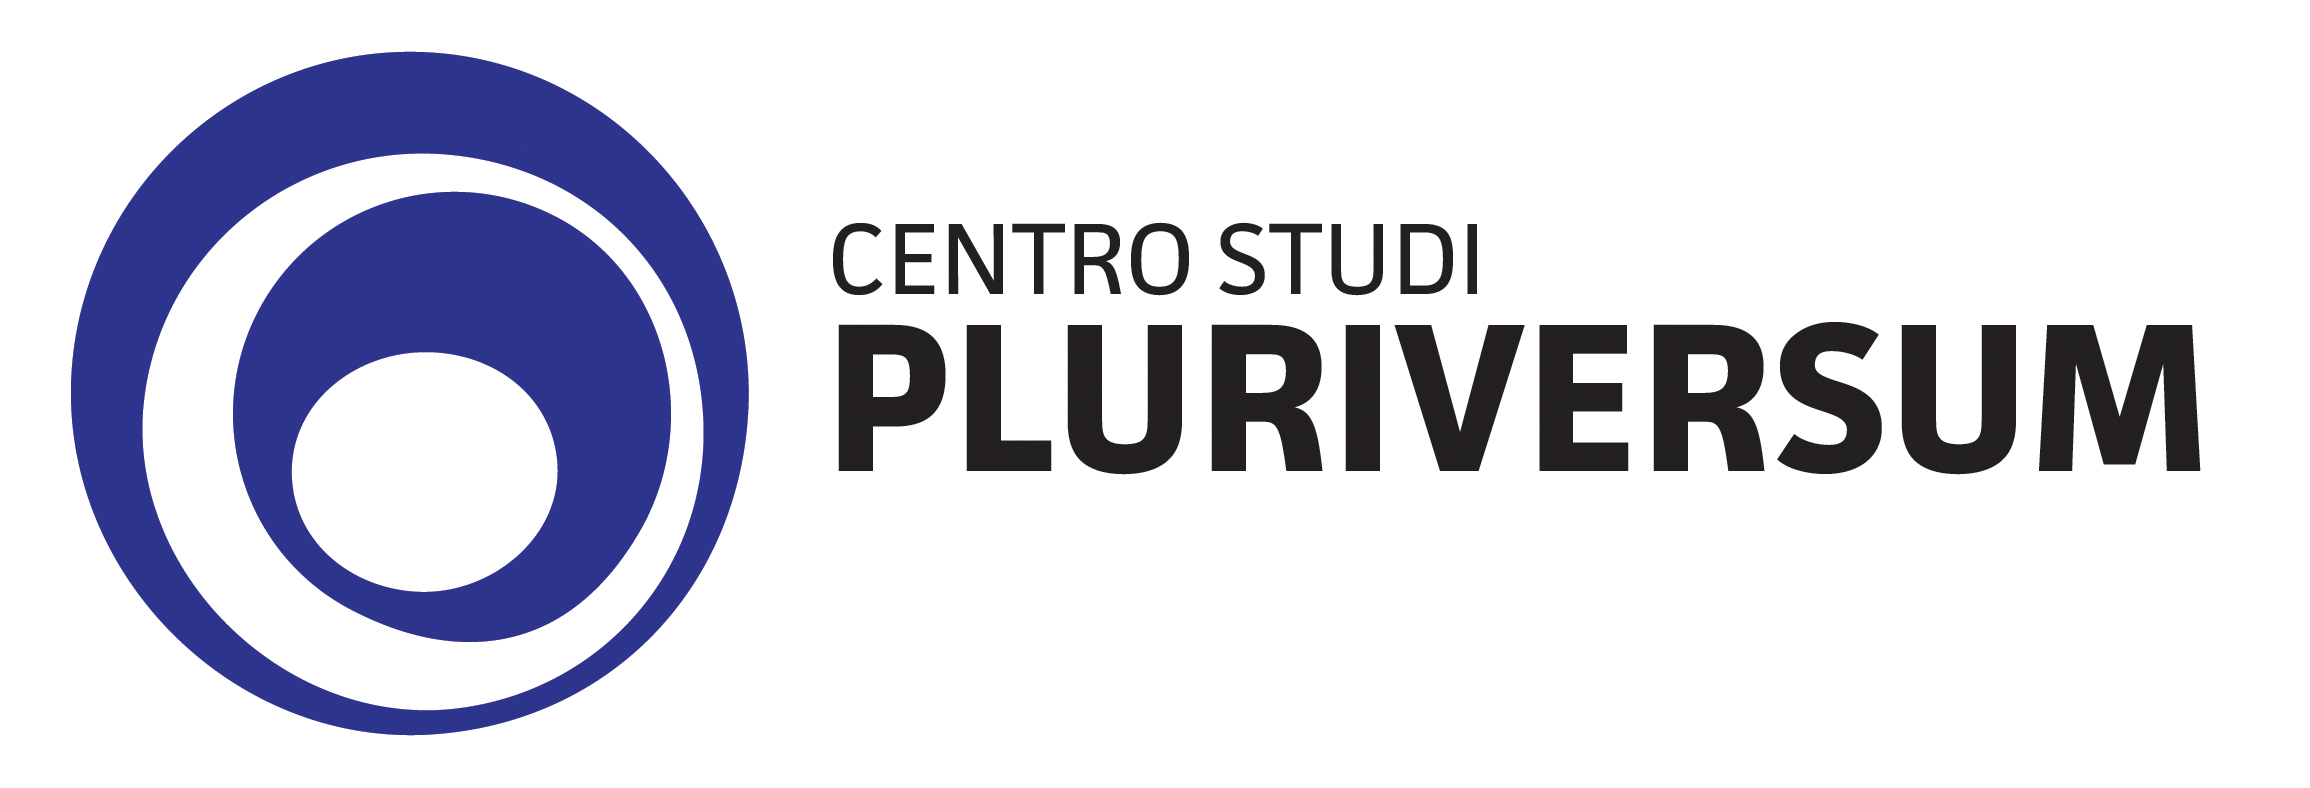 Centro Studio Pluriversum